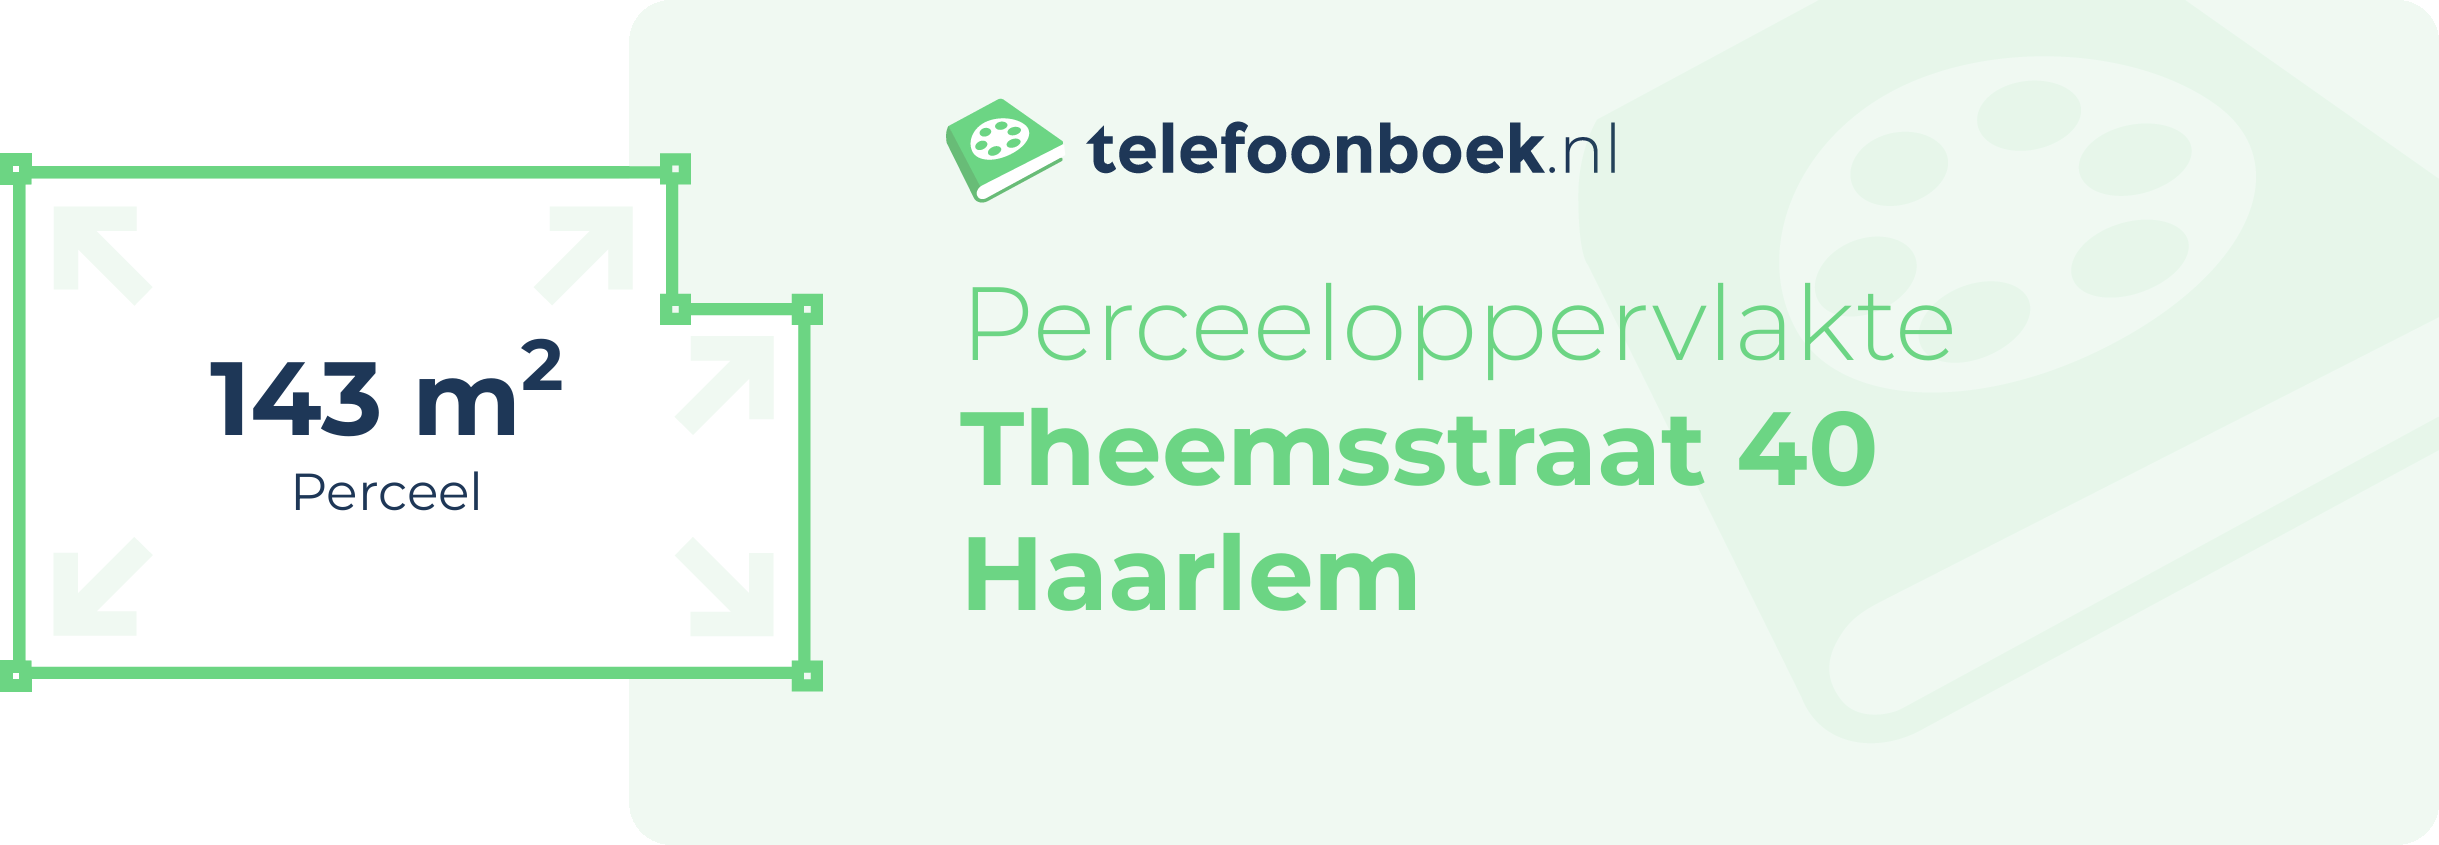 Perceeloppervlakte Theemsstraat 40 Haarlem